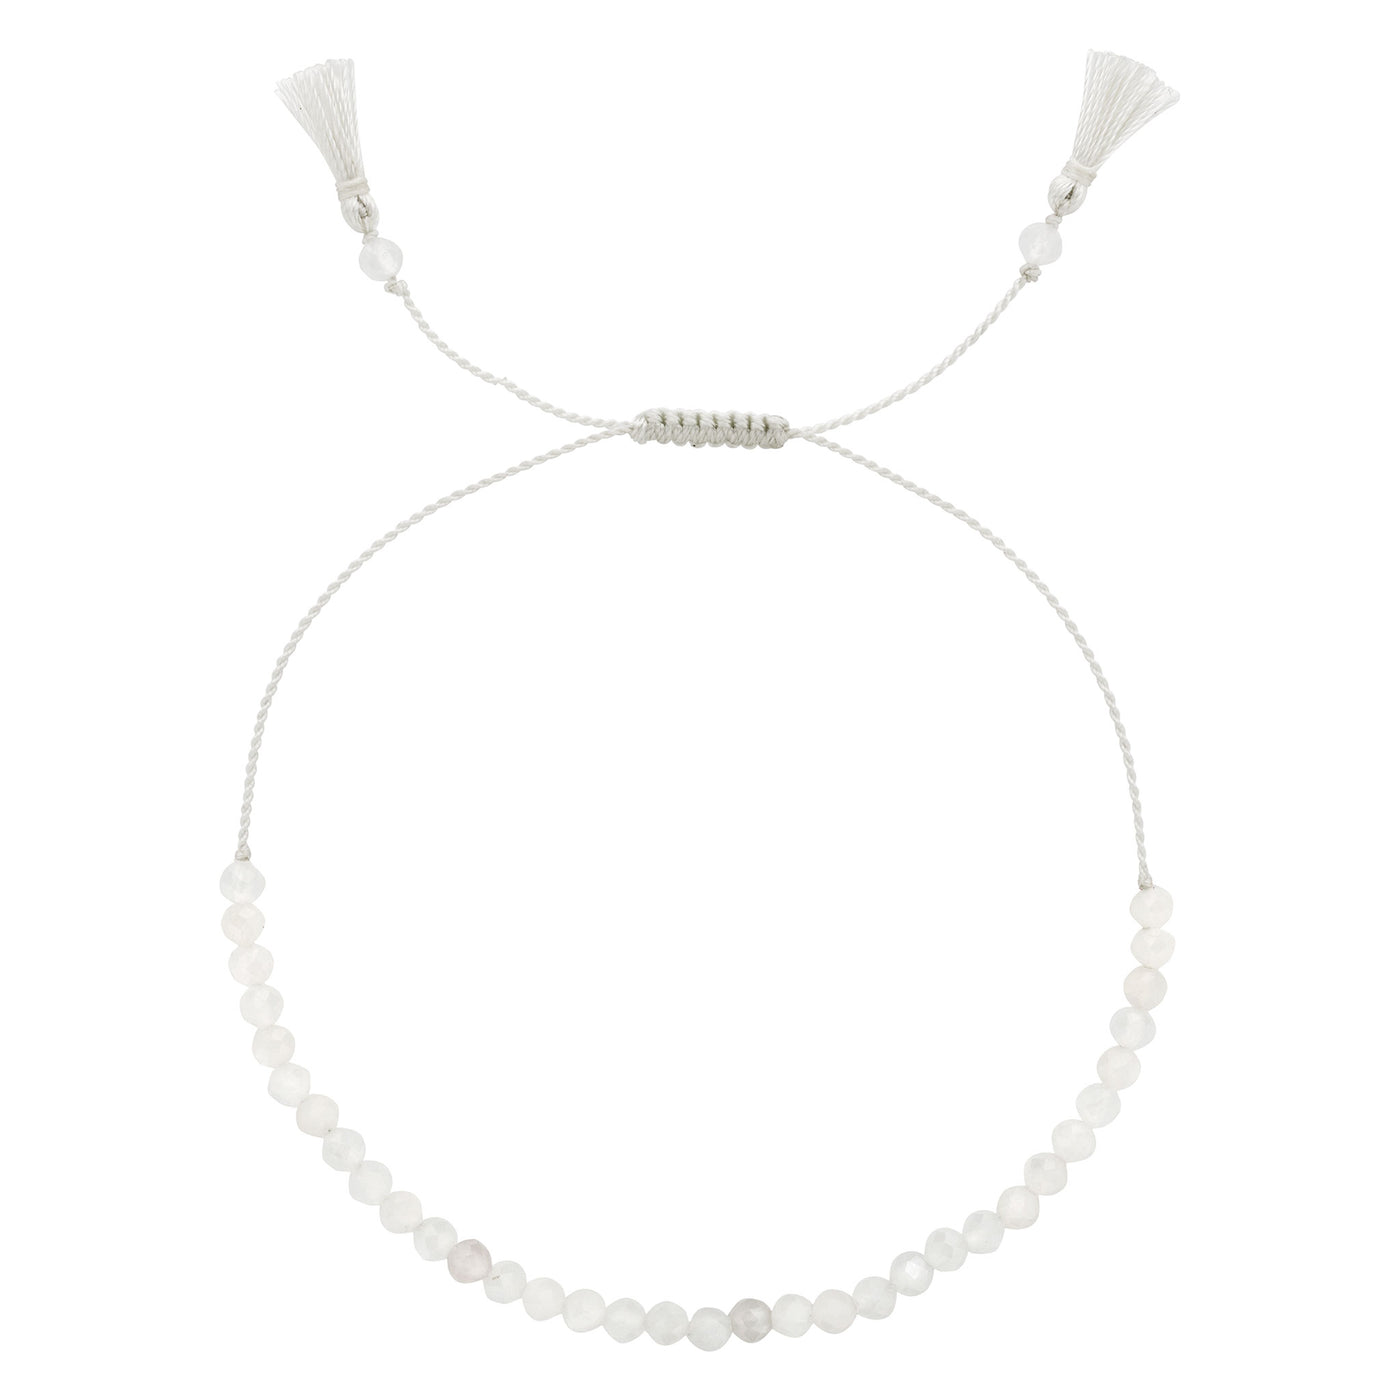 JUNE Birthstone: White Moonstone Women's Delicate Faceted Mini Tassel Bracelet